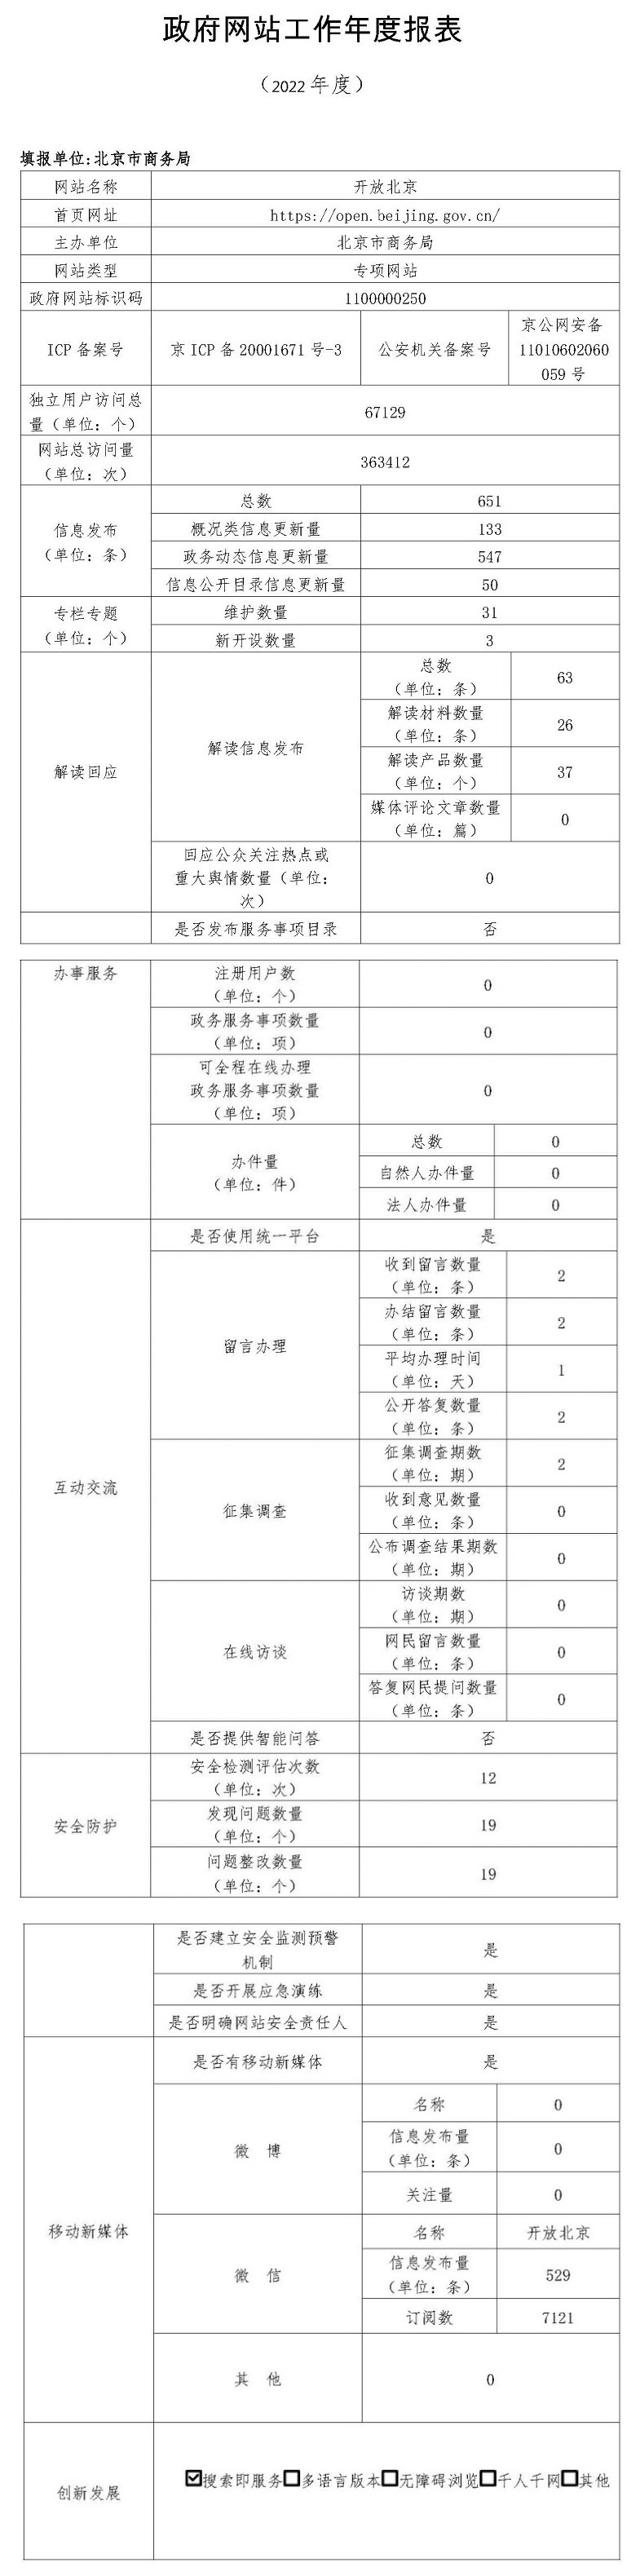 開放北京2022年政府網站年度工作報表